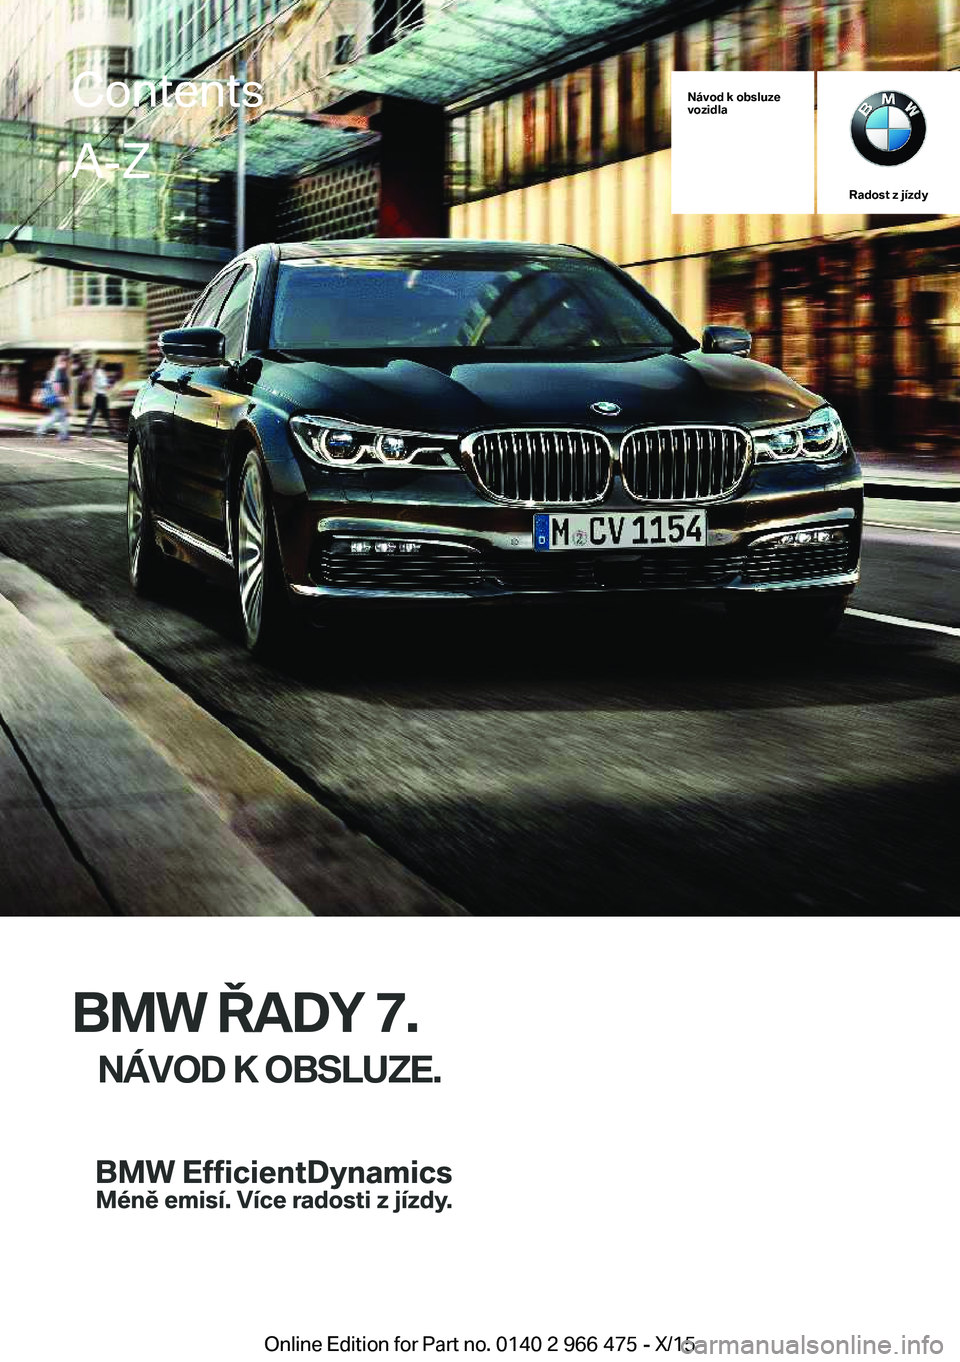 BMW 7 SERIES 2016  Návod na použití (in Czech) Návod k obsluze
vozidla
Radost z jízdy
BMW ŘADY 7.
NÁVOD K OBSLUZE.
ContentsA-Z
Online Edition for Part no. 0140 2 966 475 - X/15   